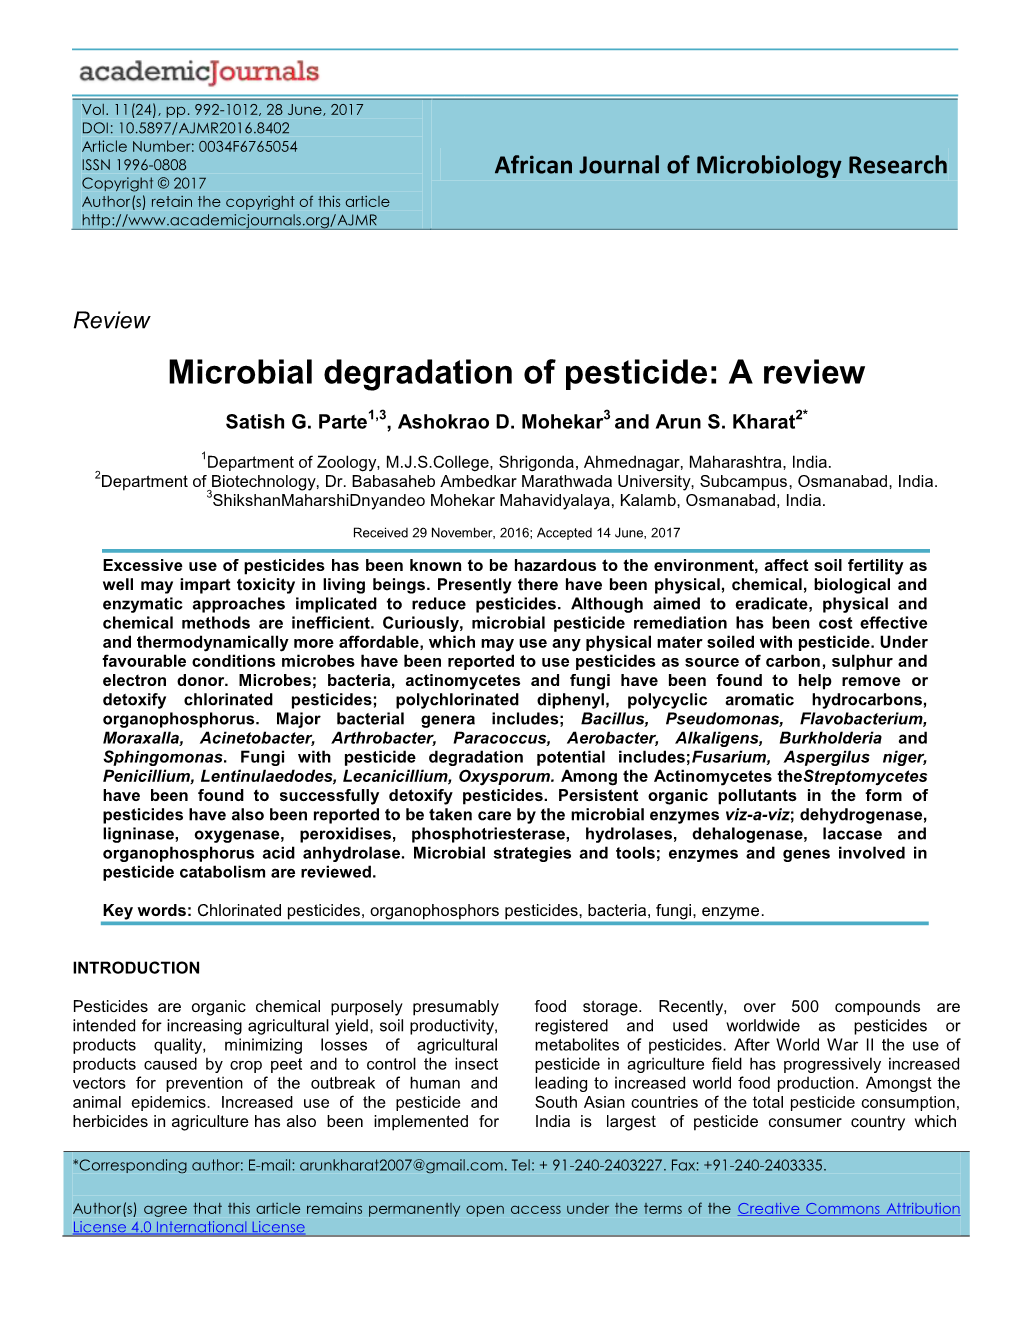 Microbial Degradation of Pesticide: a Review